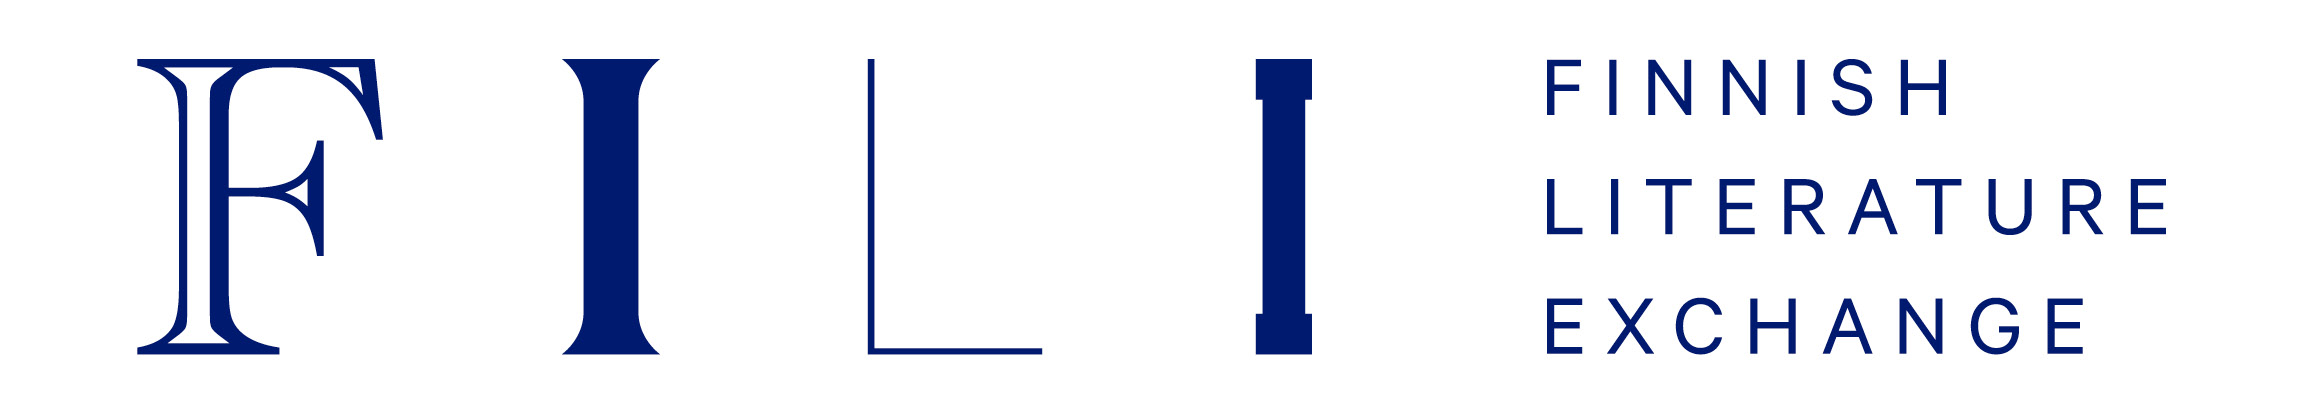 Finnish literature exchange logo